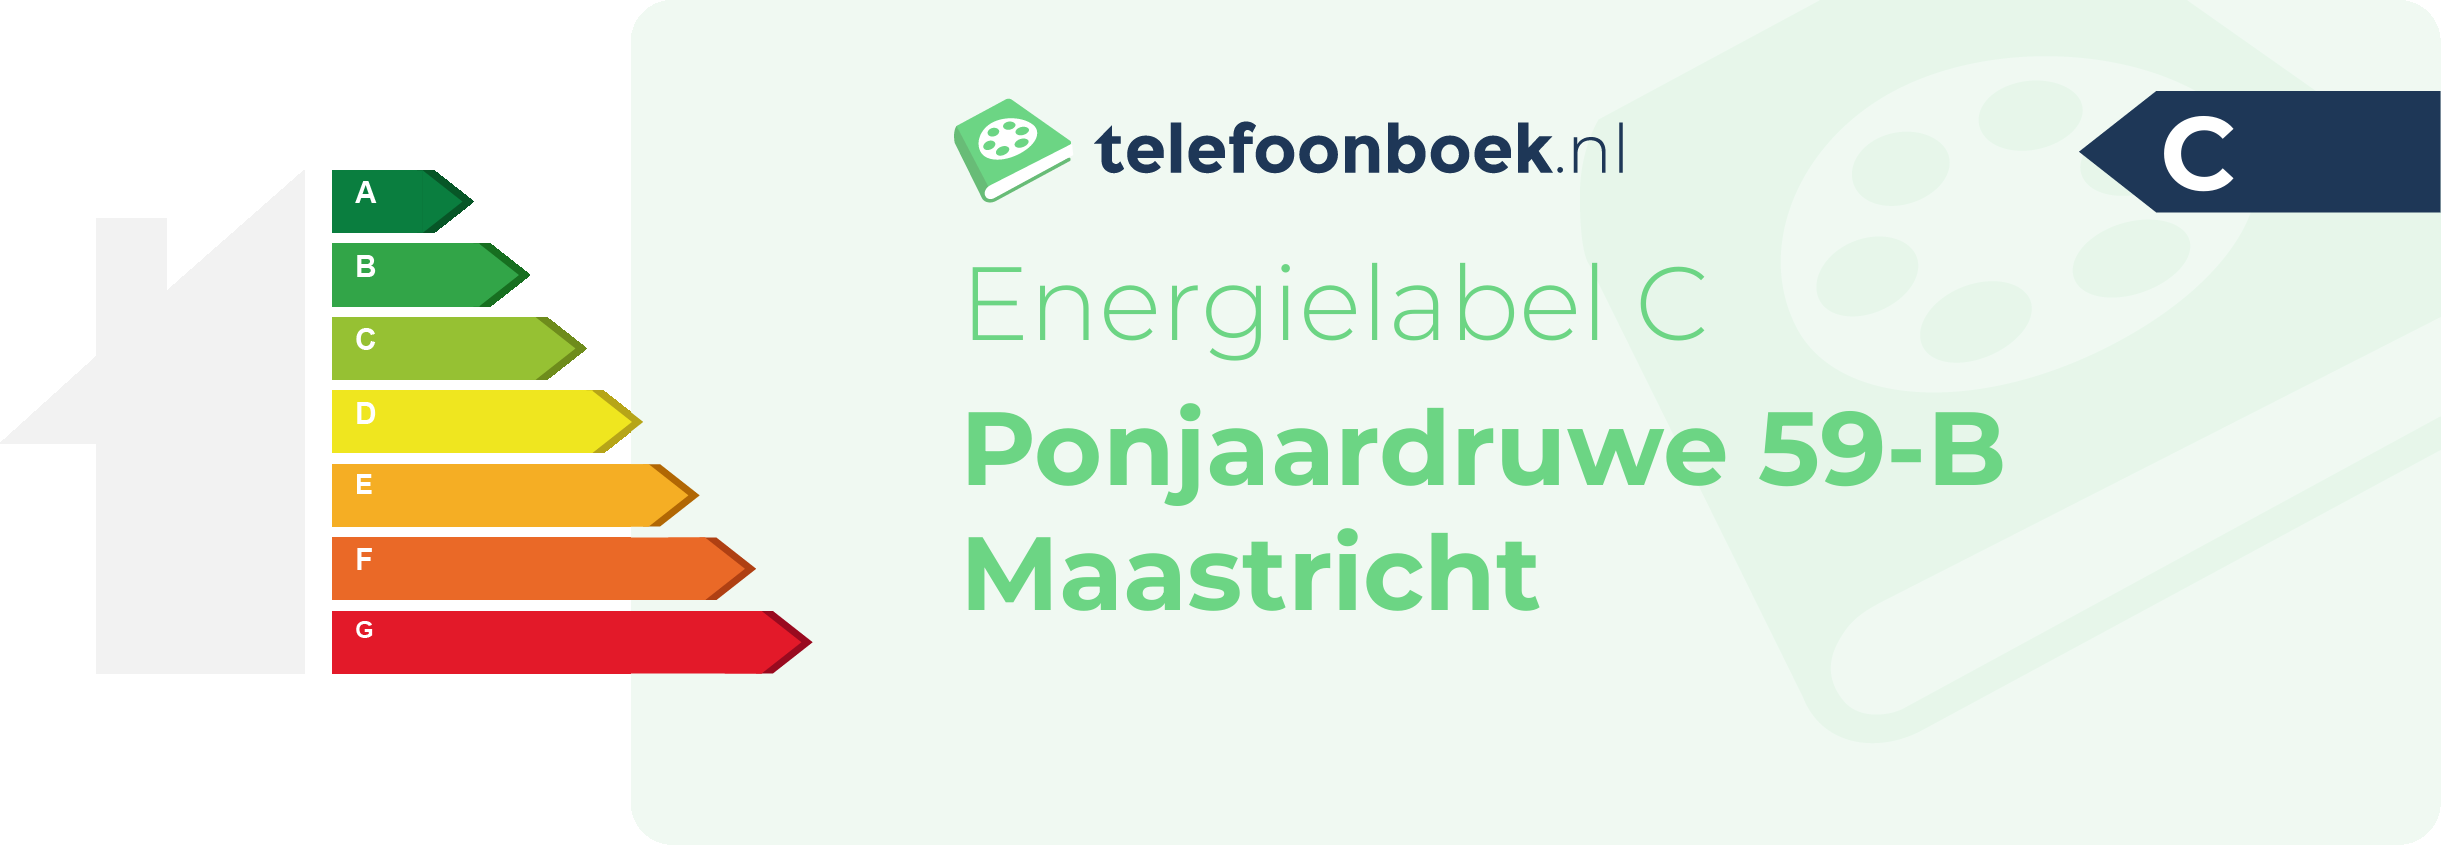 Energielabel Ponjaardruwe 59-B Maastricht